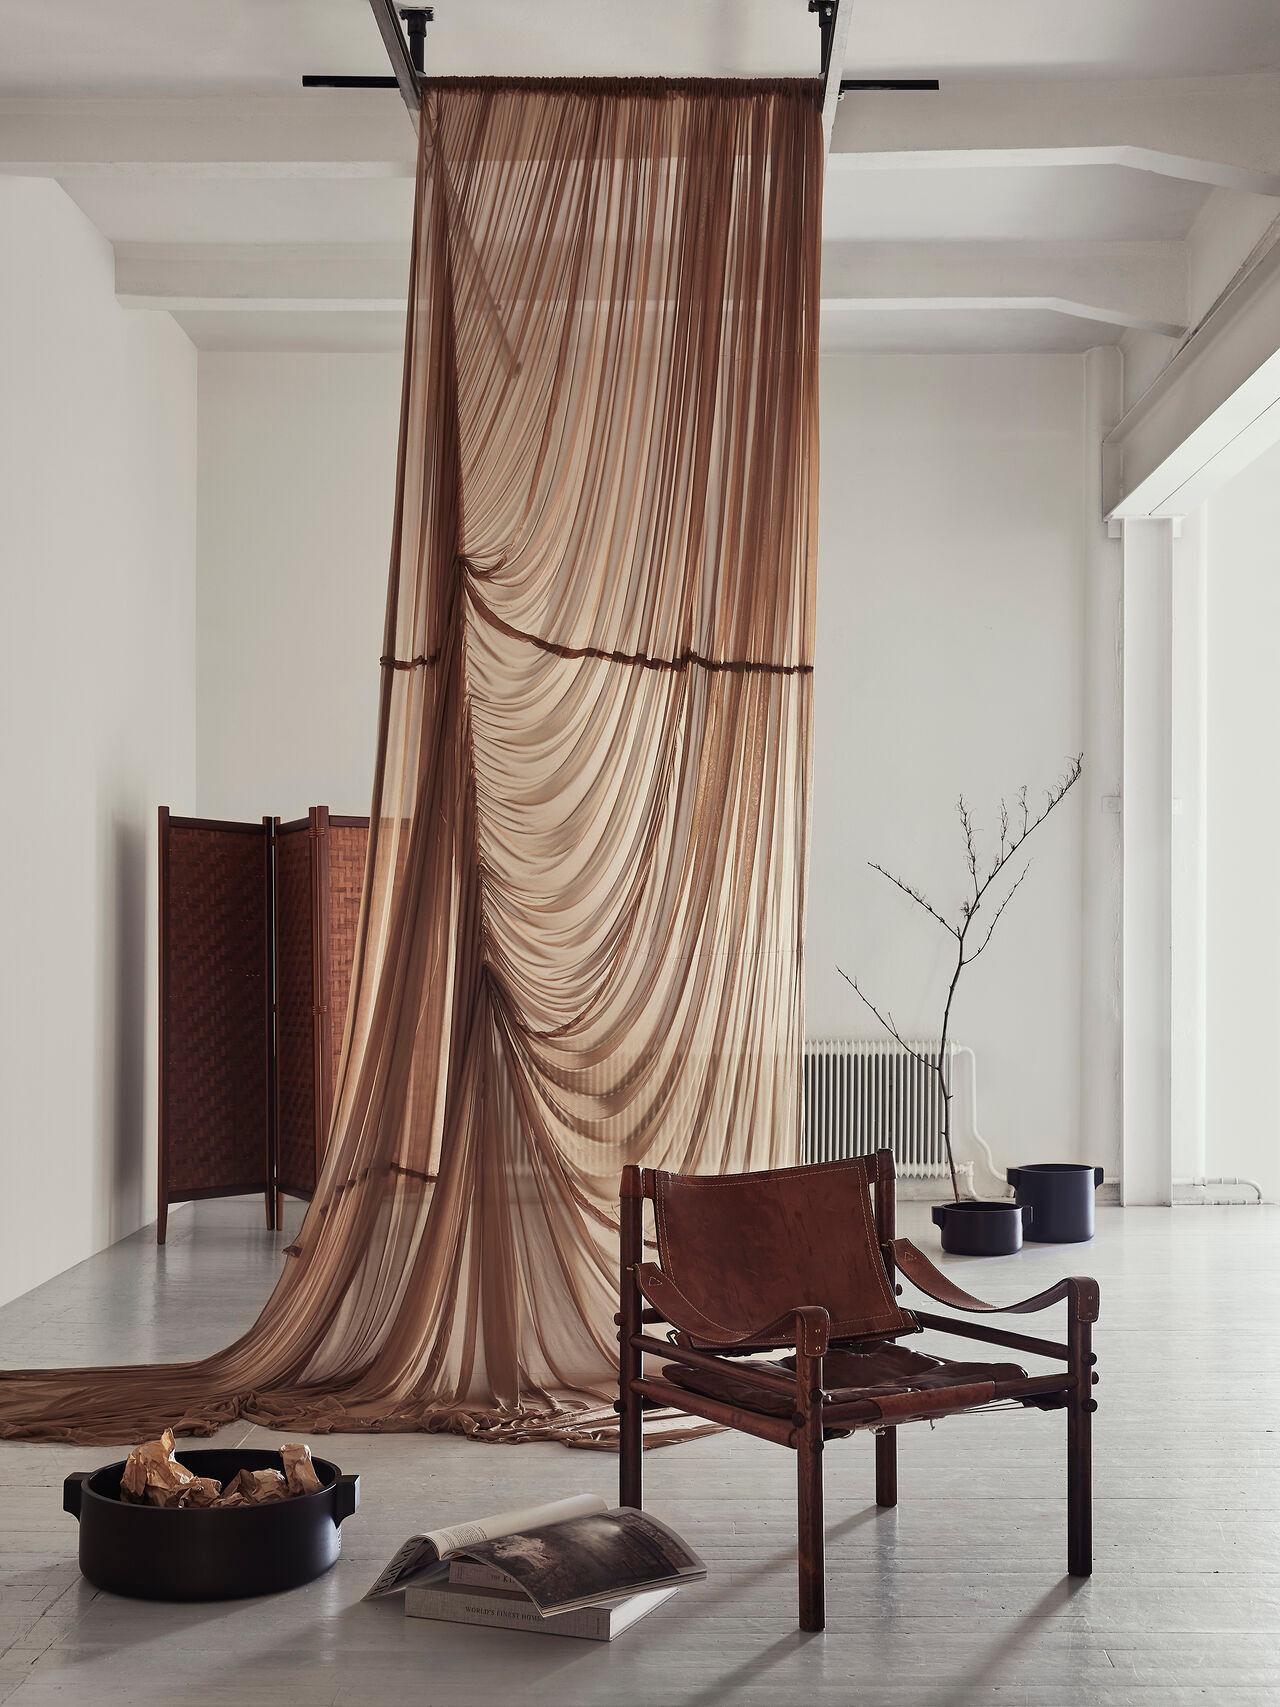 Alberts Tibro, ein renommierter Möbelhersteller, ist bekannt für seine Liebe zum Detail und sein Engagement bei der Herstellung von Qualitätsmöbeln. Dieser Raumteiler ist keine Ausnahme und zeigt das Engagement der Marke für hervorragendes Design